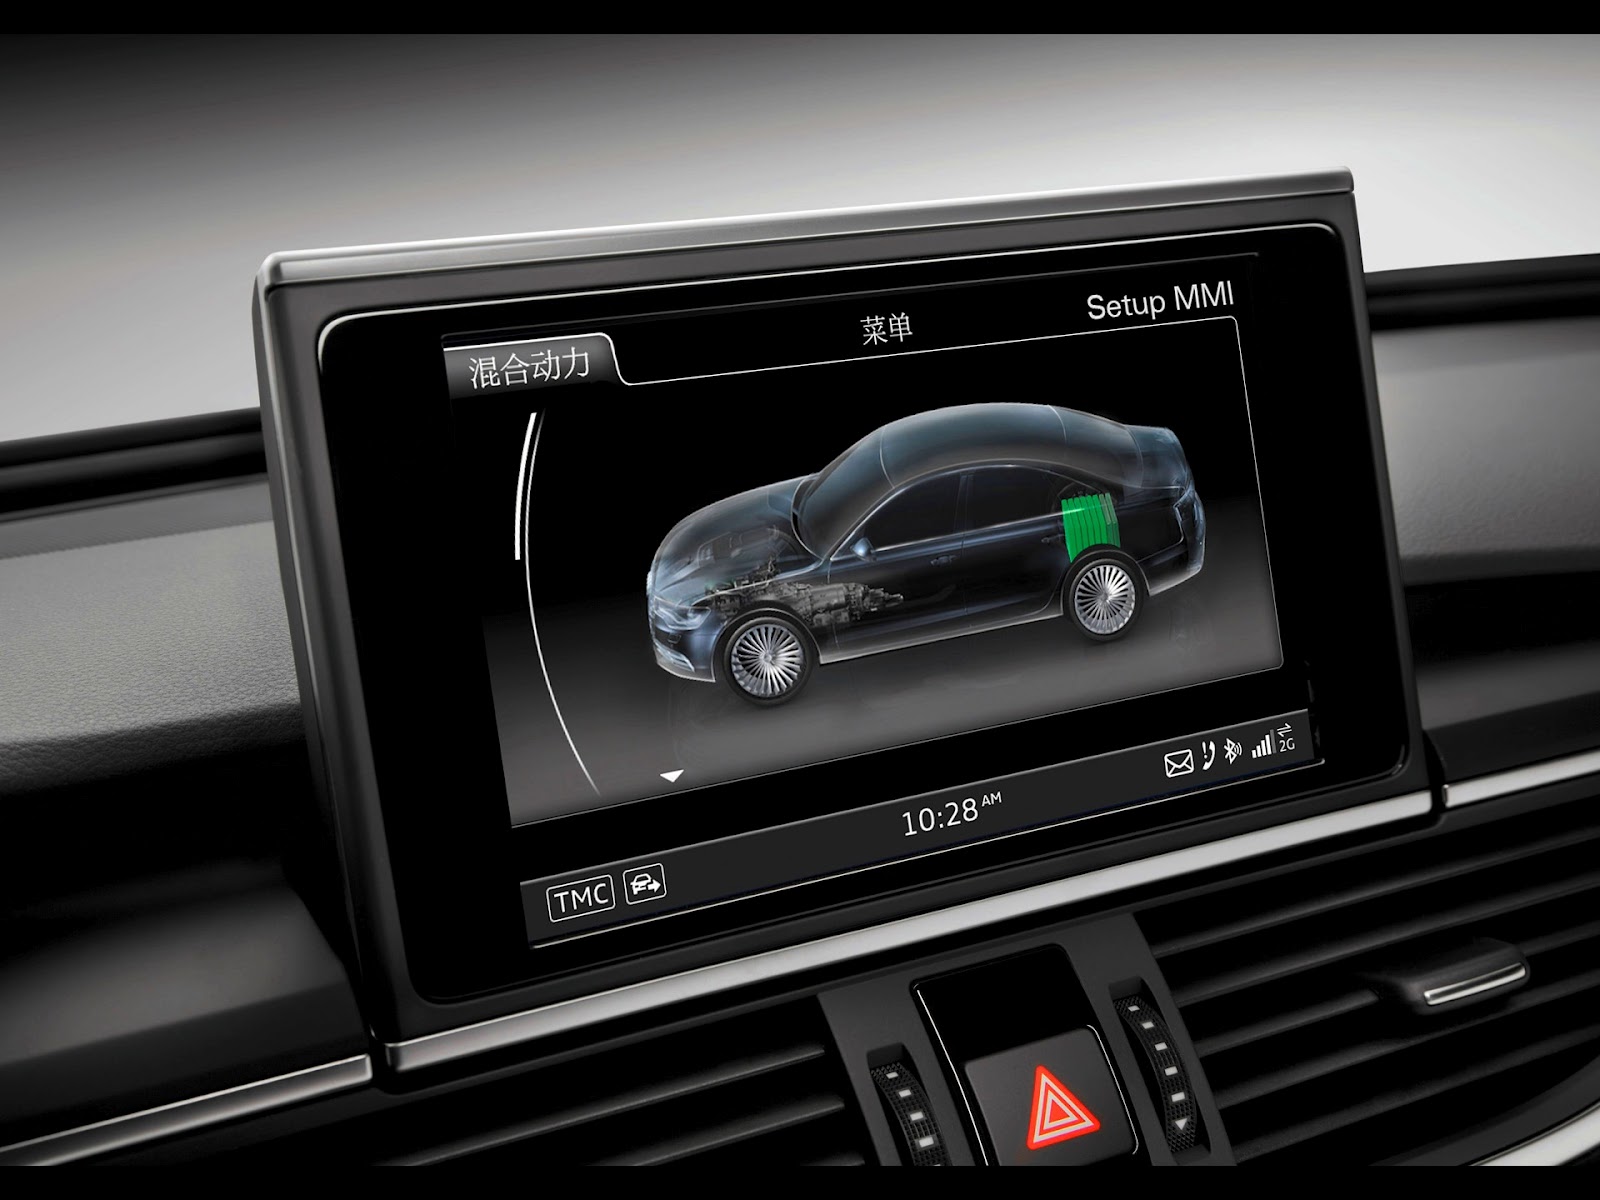 2012 Audi A6 L E Tron Concept Interior News Hot Car